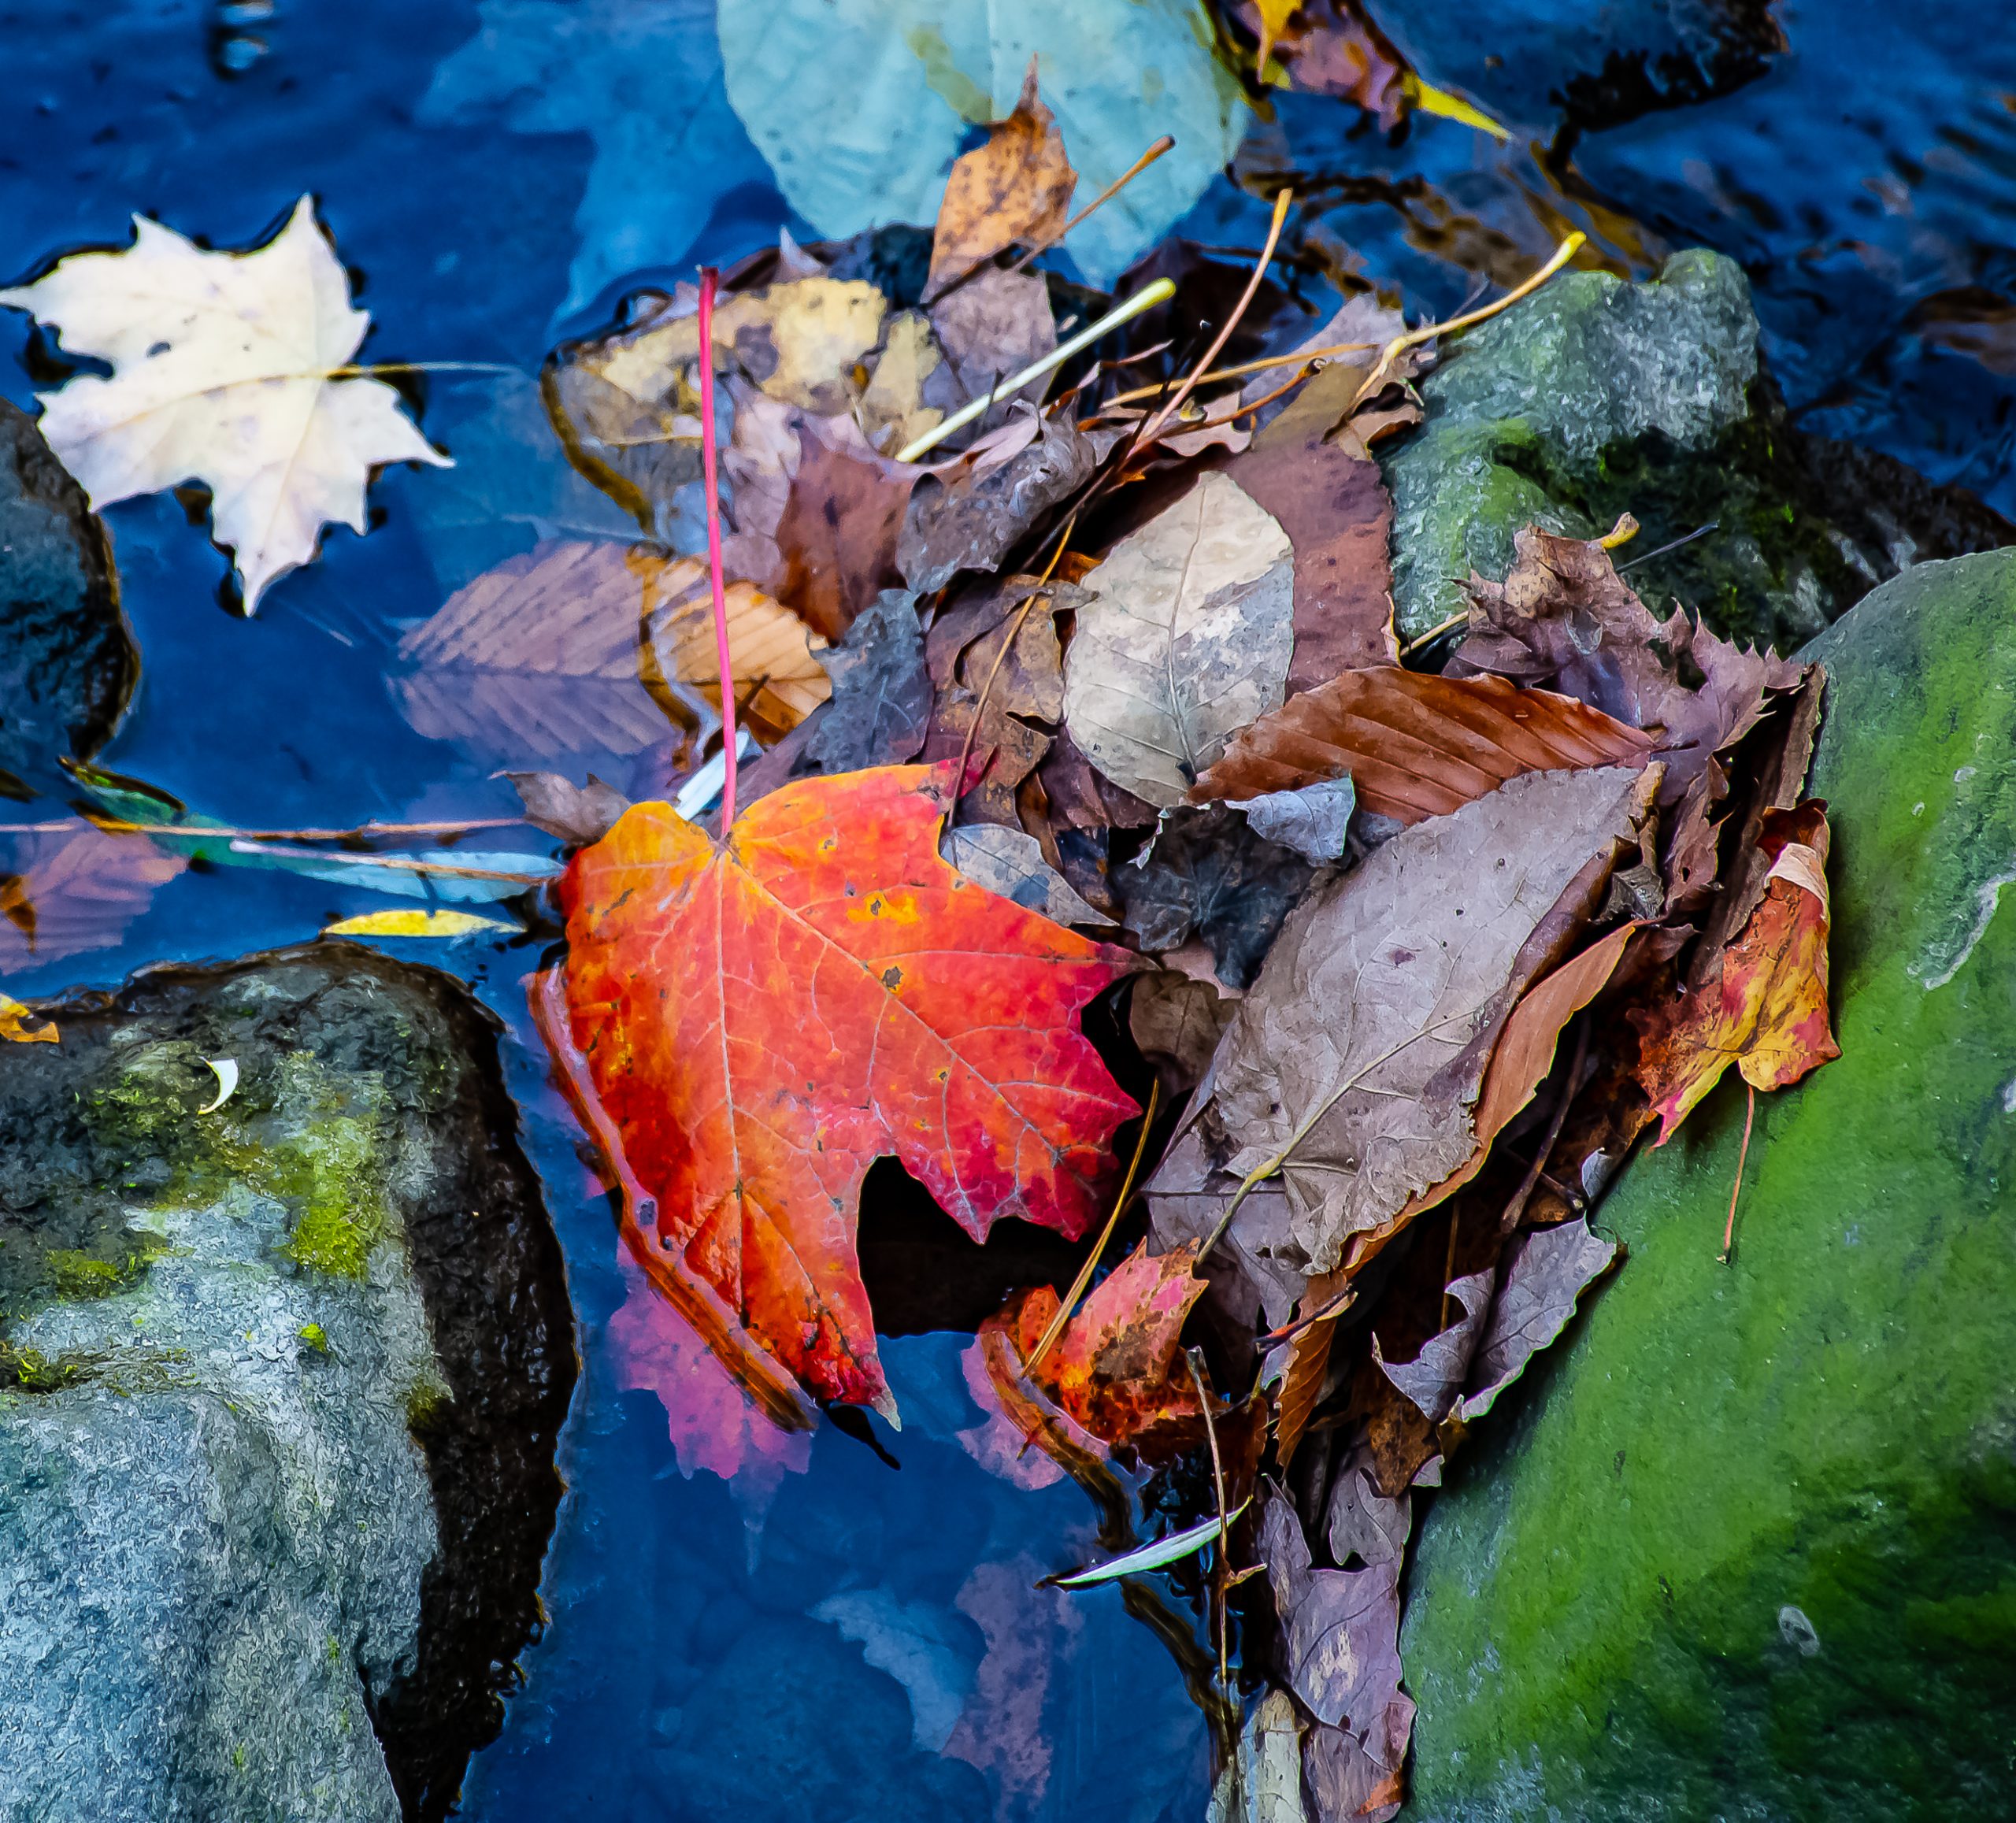     Ian Darragh, Fall leaves in Wilket Creek, 2018

